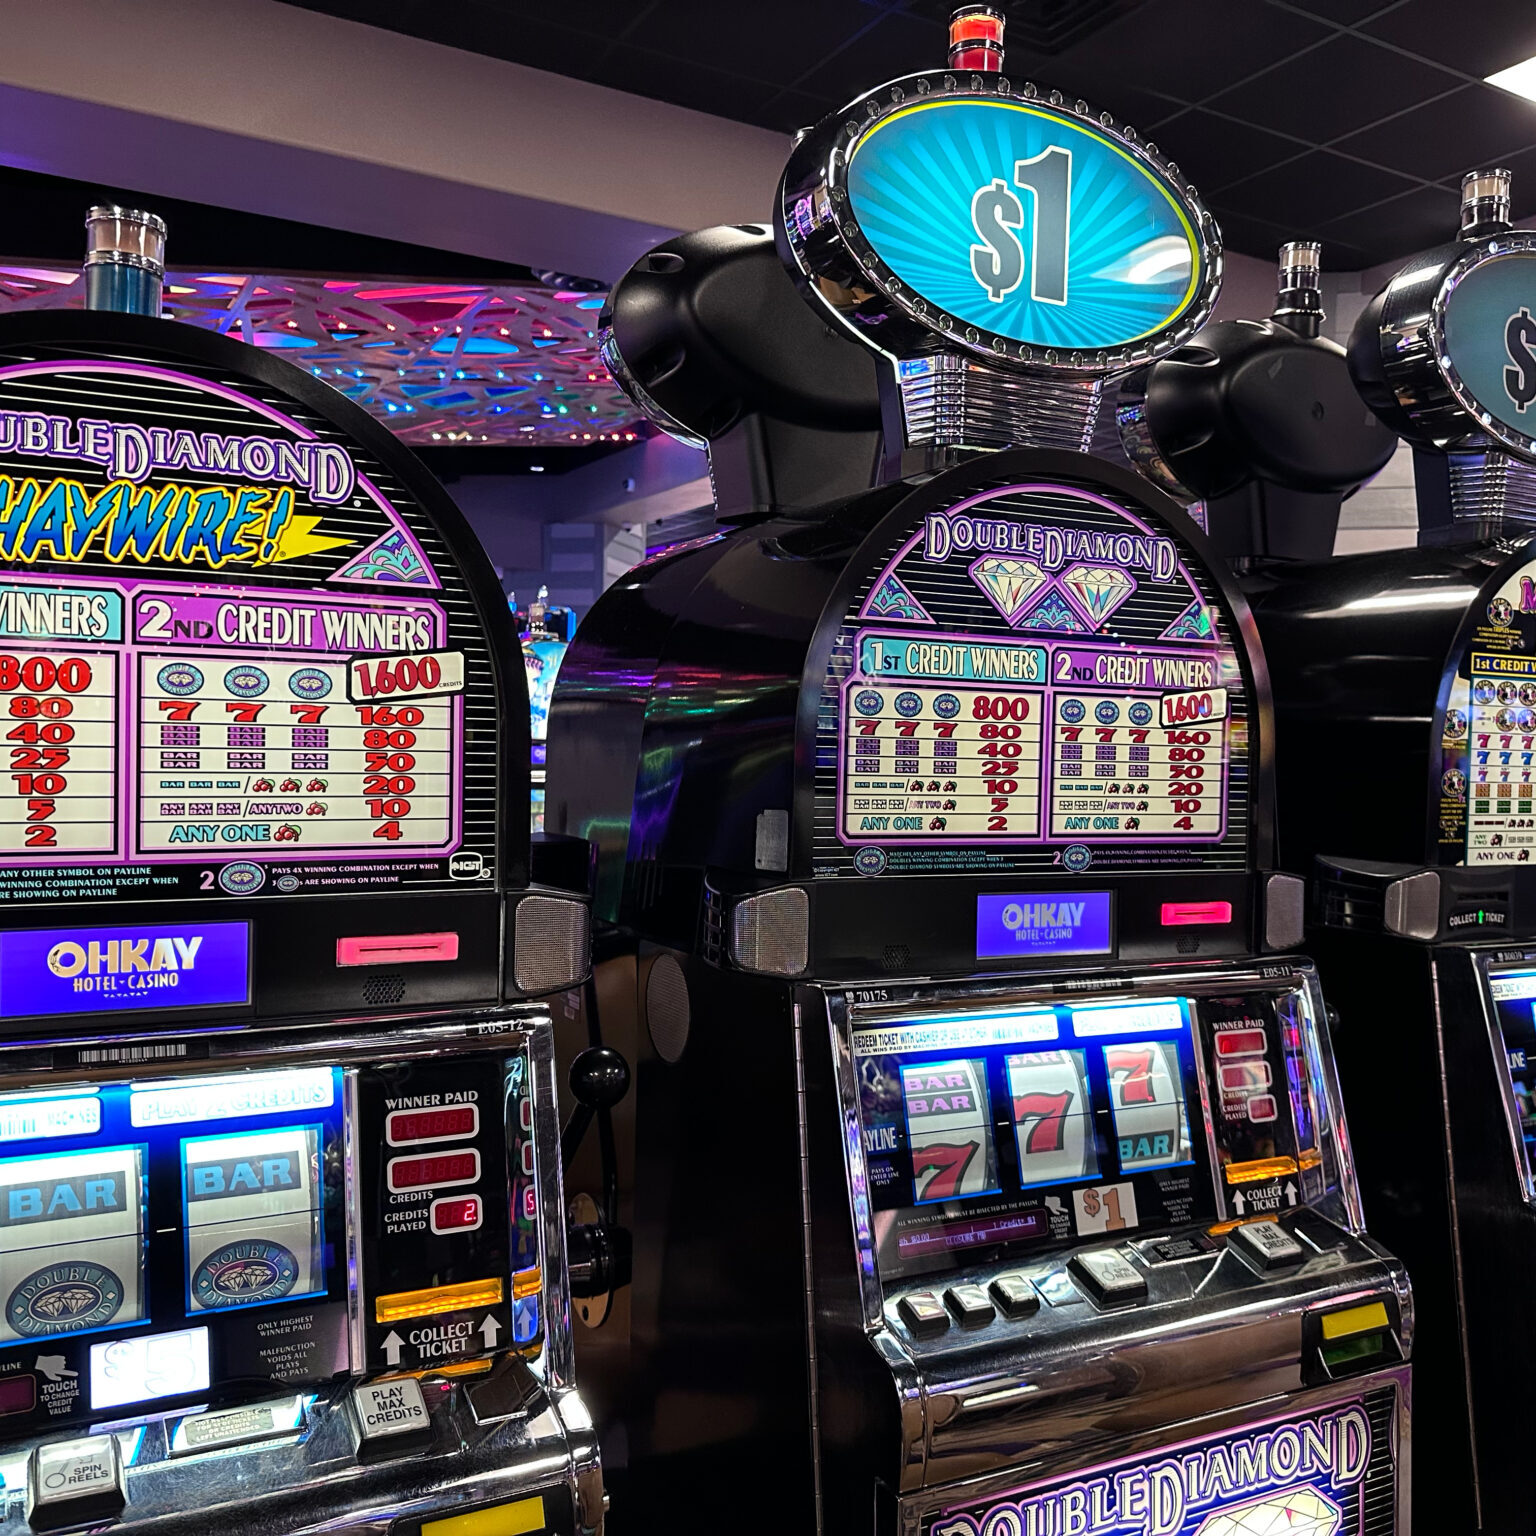 A row of Ohkay Casino slots.